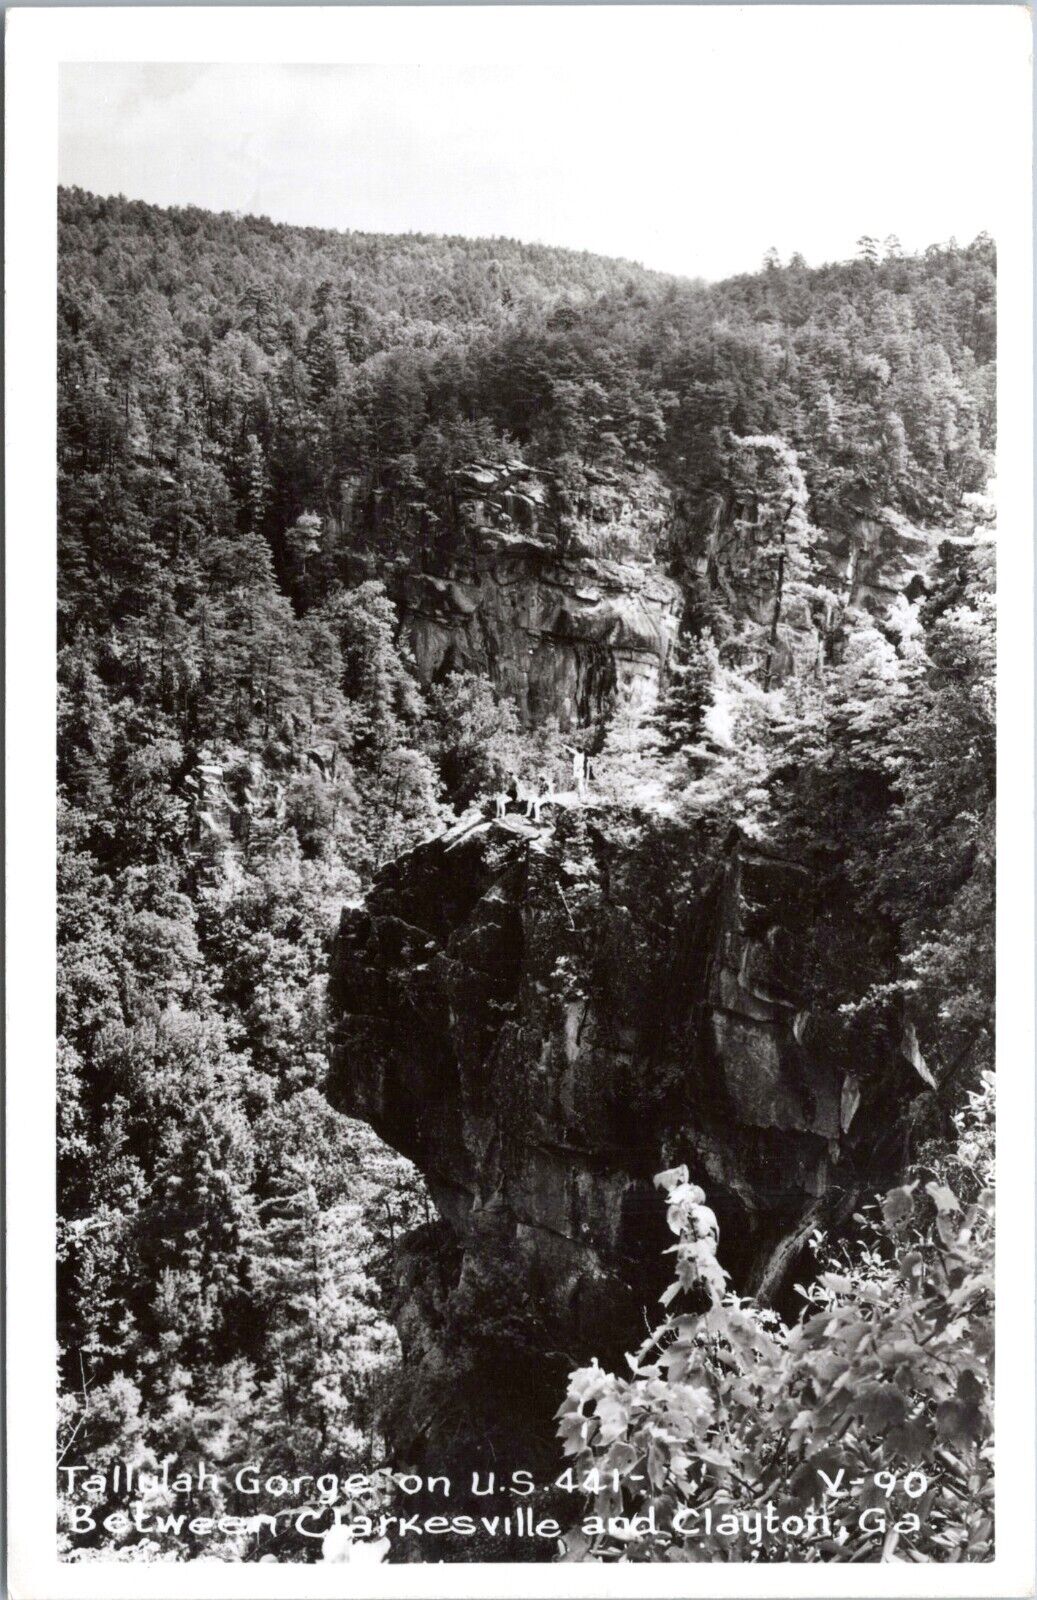 RPPC Tallulah Gorge, Clarkesville, Clayton, Georgia - c1950s Photo Postcard